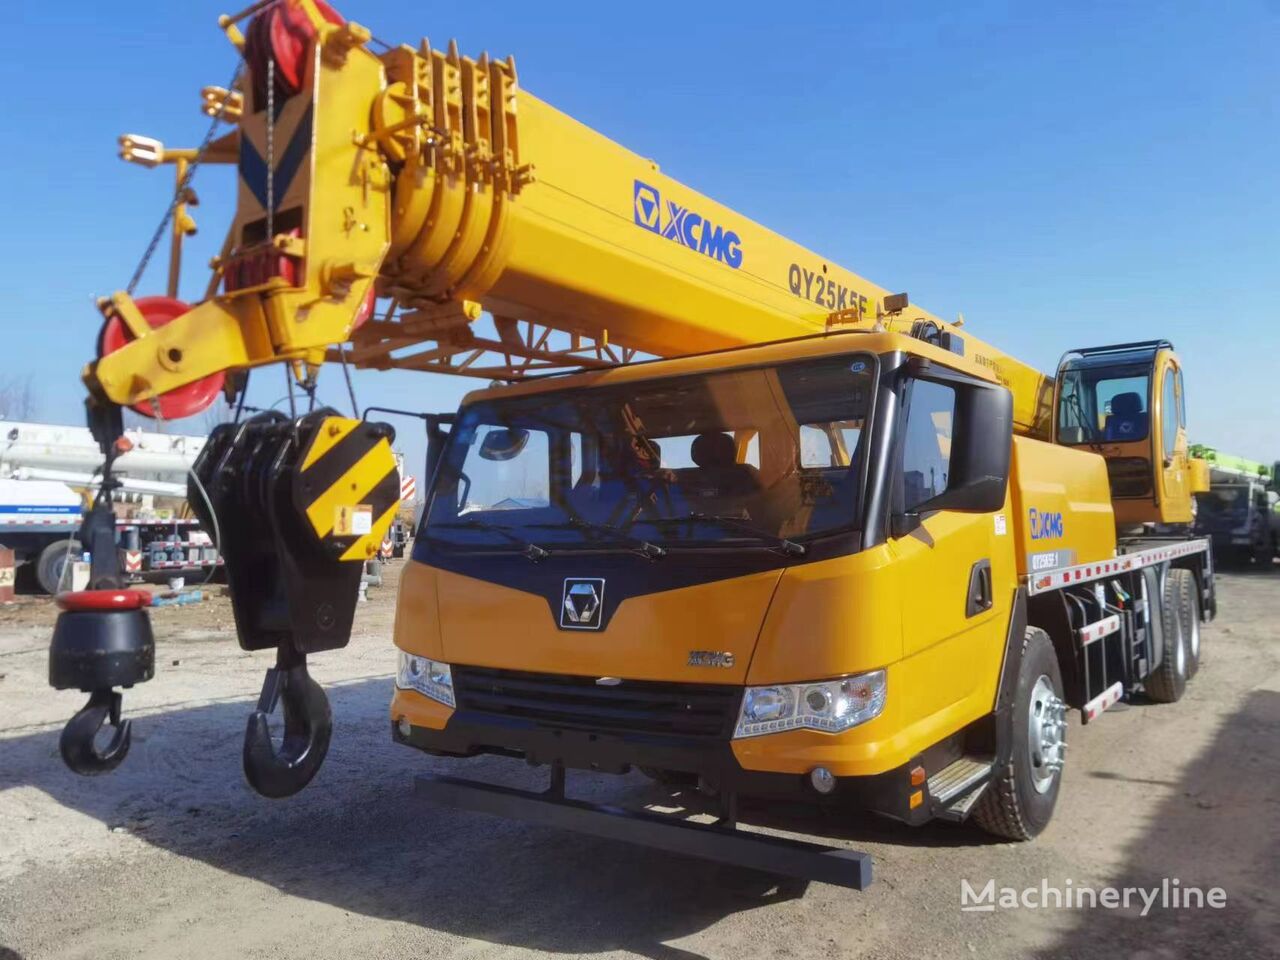 κινητός γερανός XCMG QY25K5F 25 ton used hydraulic mounted mobile truck crane on sale